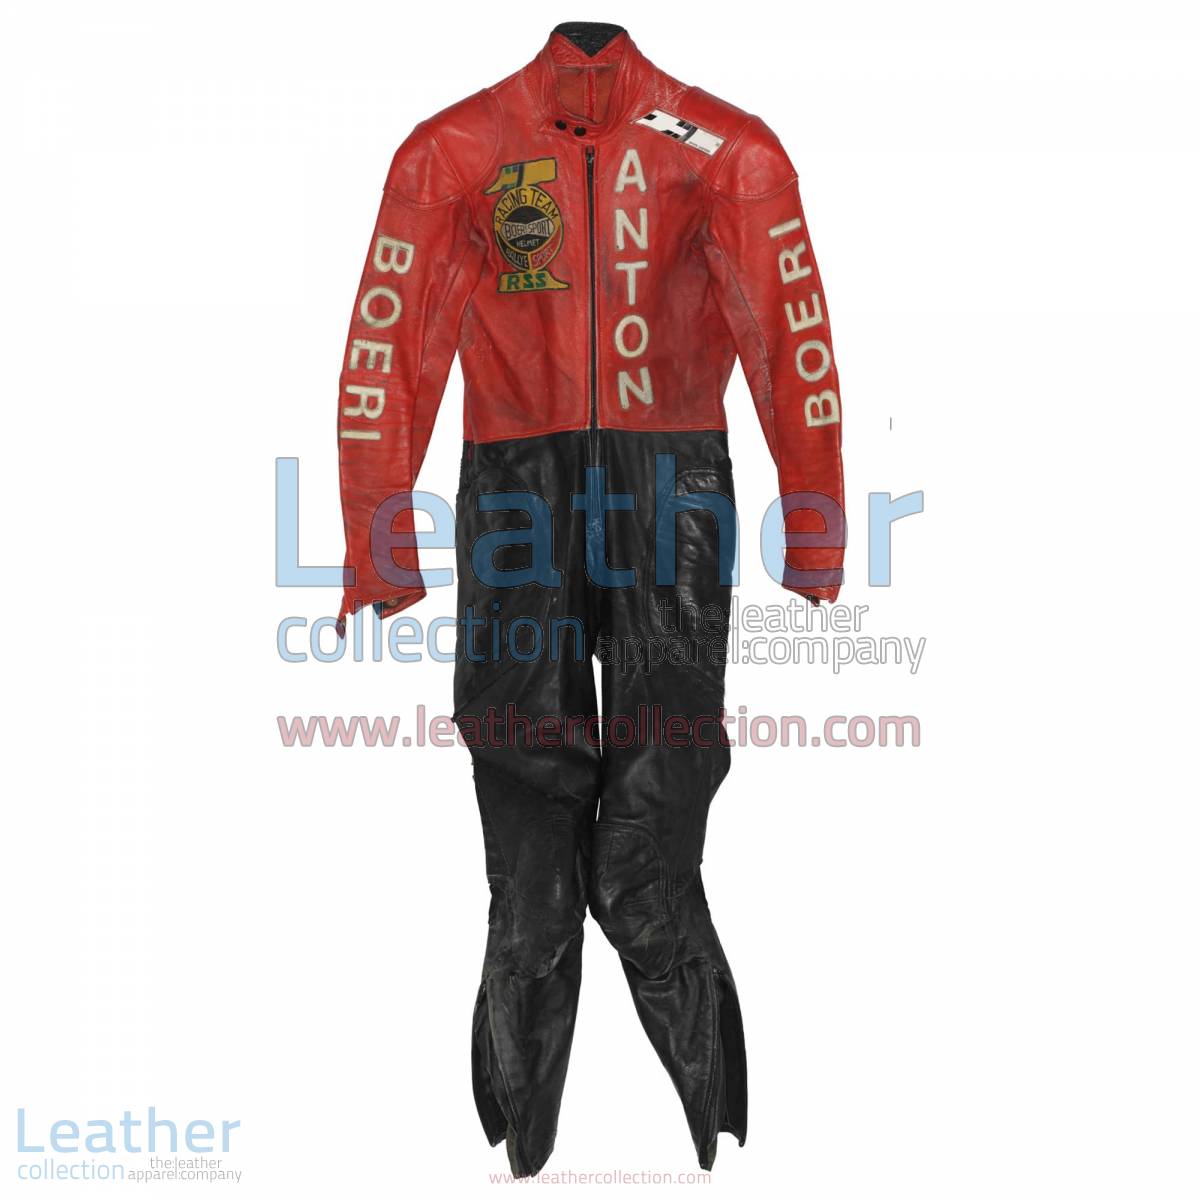 Toni Mang Kawasaki GP 1980 Racing Suit